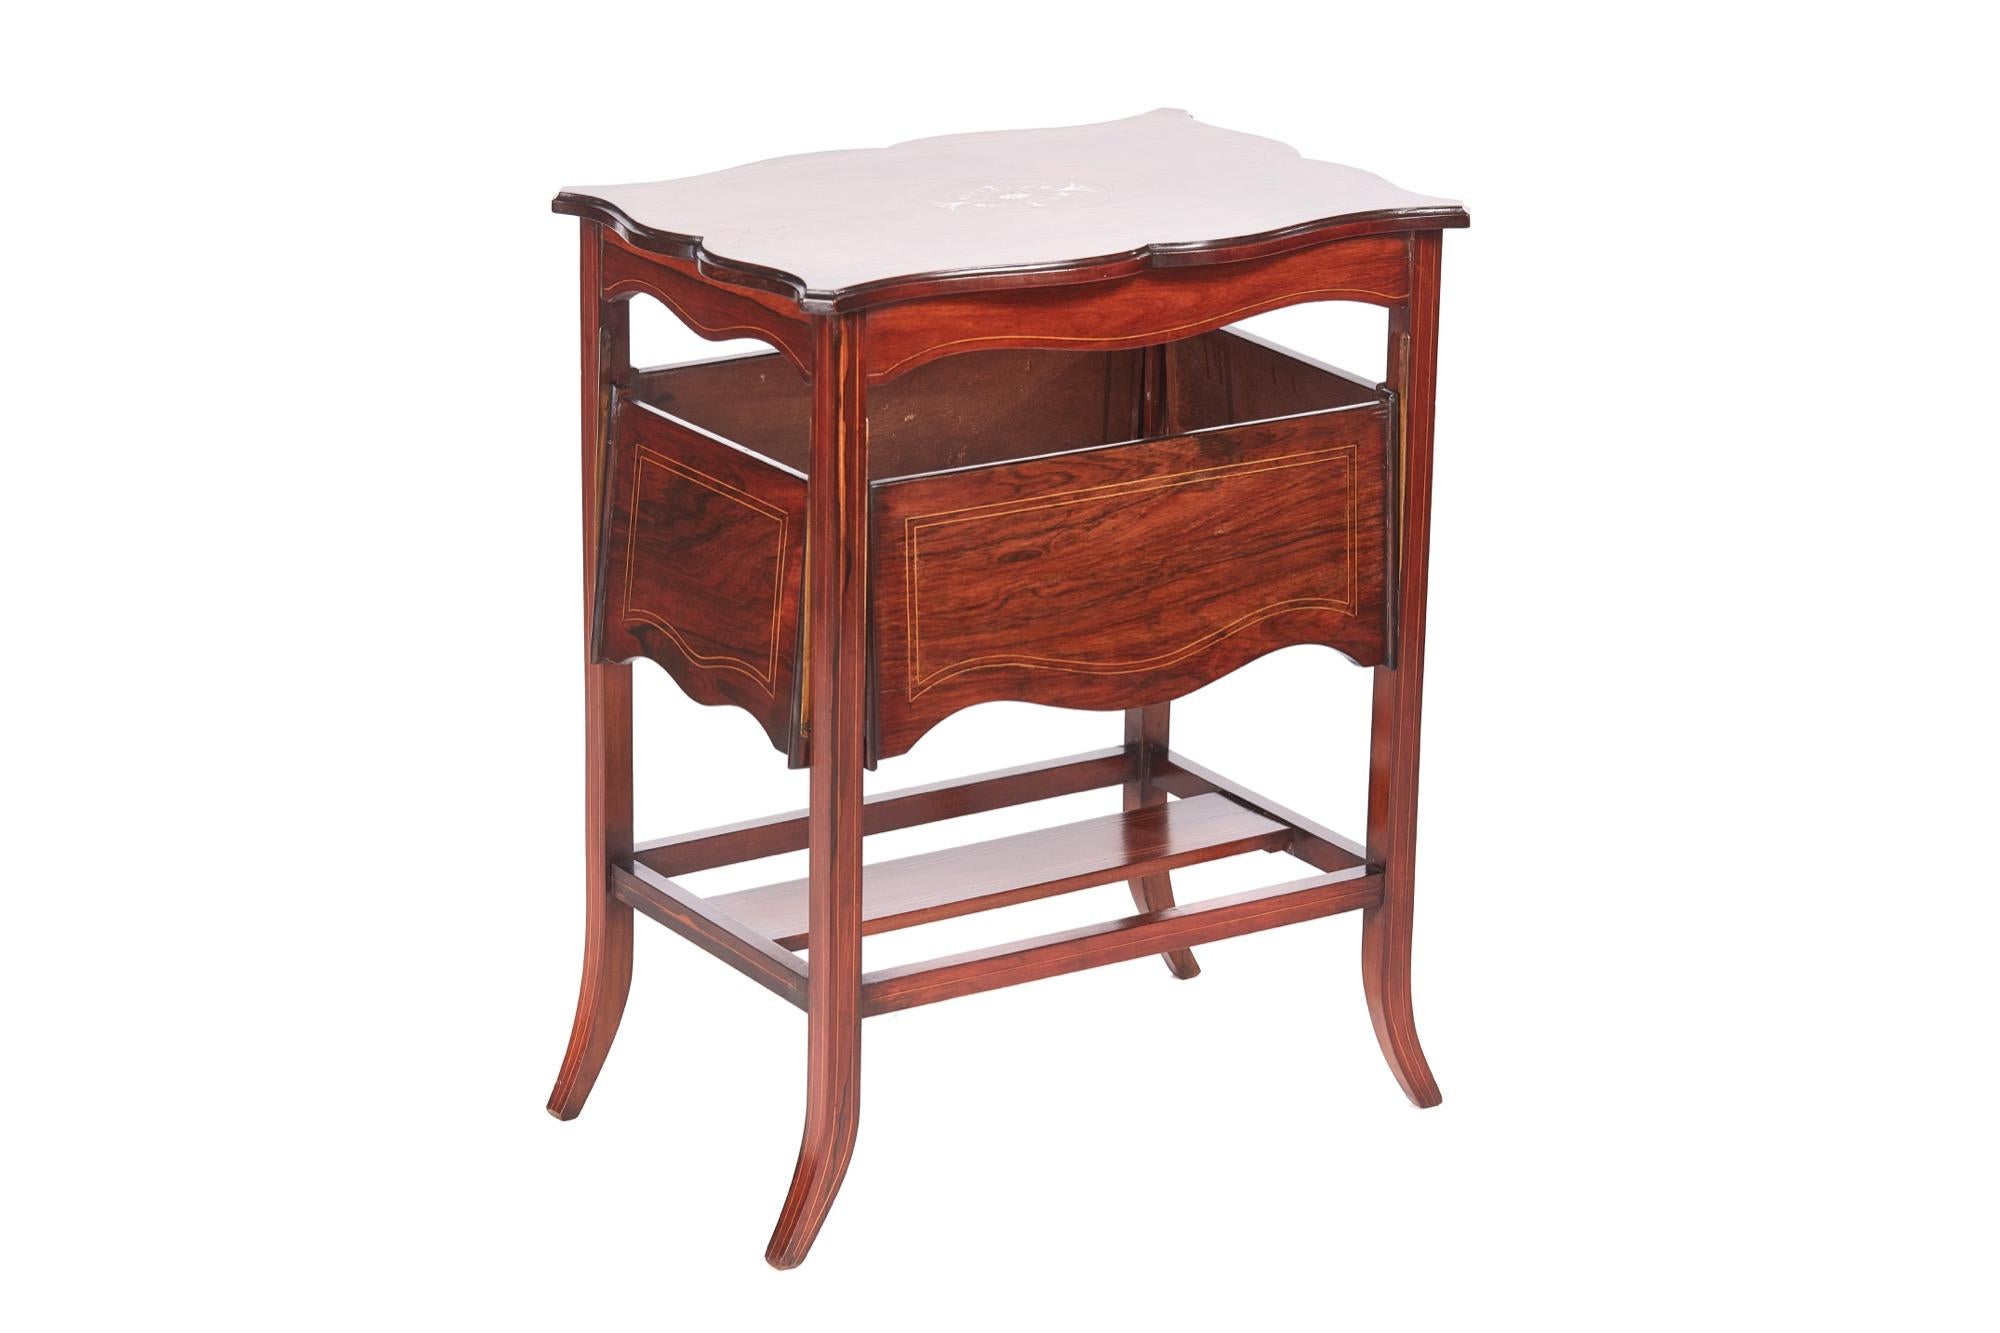 Ungewöhnlicher antiker edwardianischer Tisch mit Intarsien aus Hartholz mit einer hübschen eingelegten und geformten Palisanderplatte und vier ungewöhnlichen eingelegten Palisanderblättern. Er steht auf vier geformten Beinen aus eingelegtem